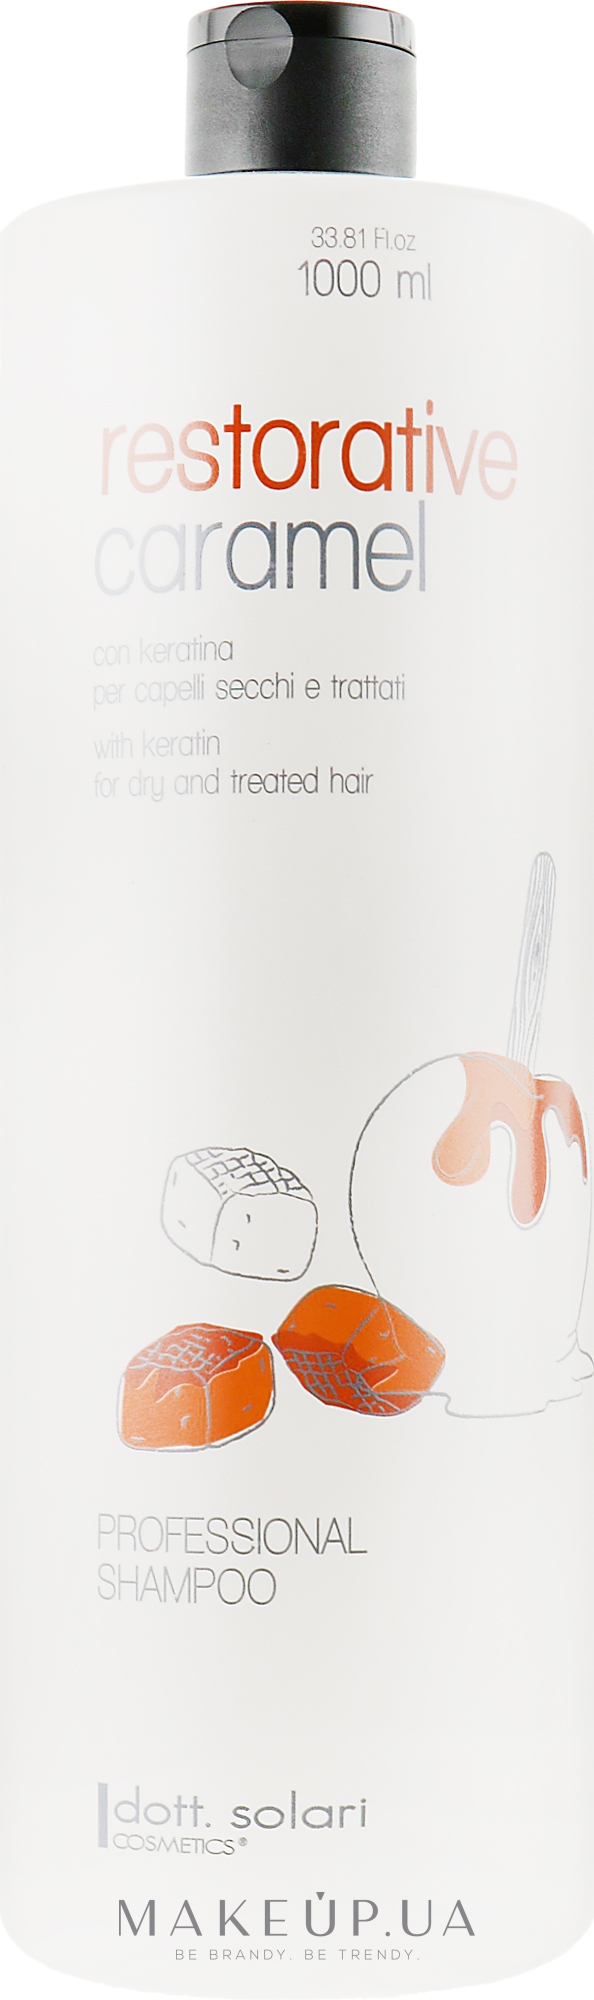 Шампунь с кератином для сухих и поврежденных волос - Dott. Solari Restorative Caramel Shampoo — фото 1000ml